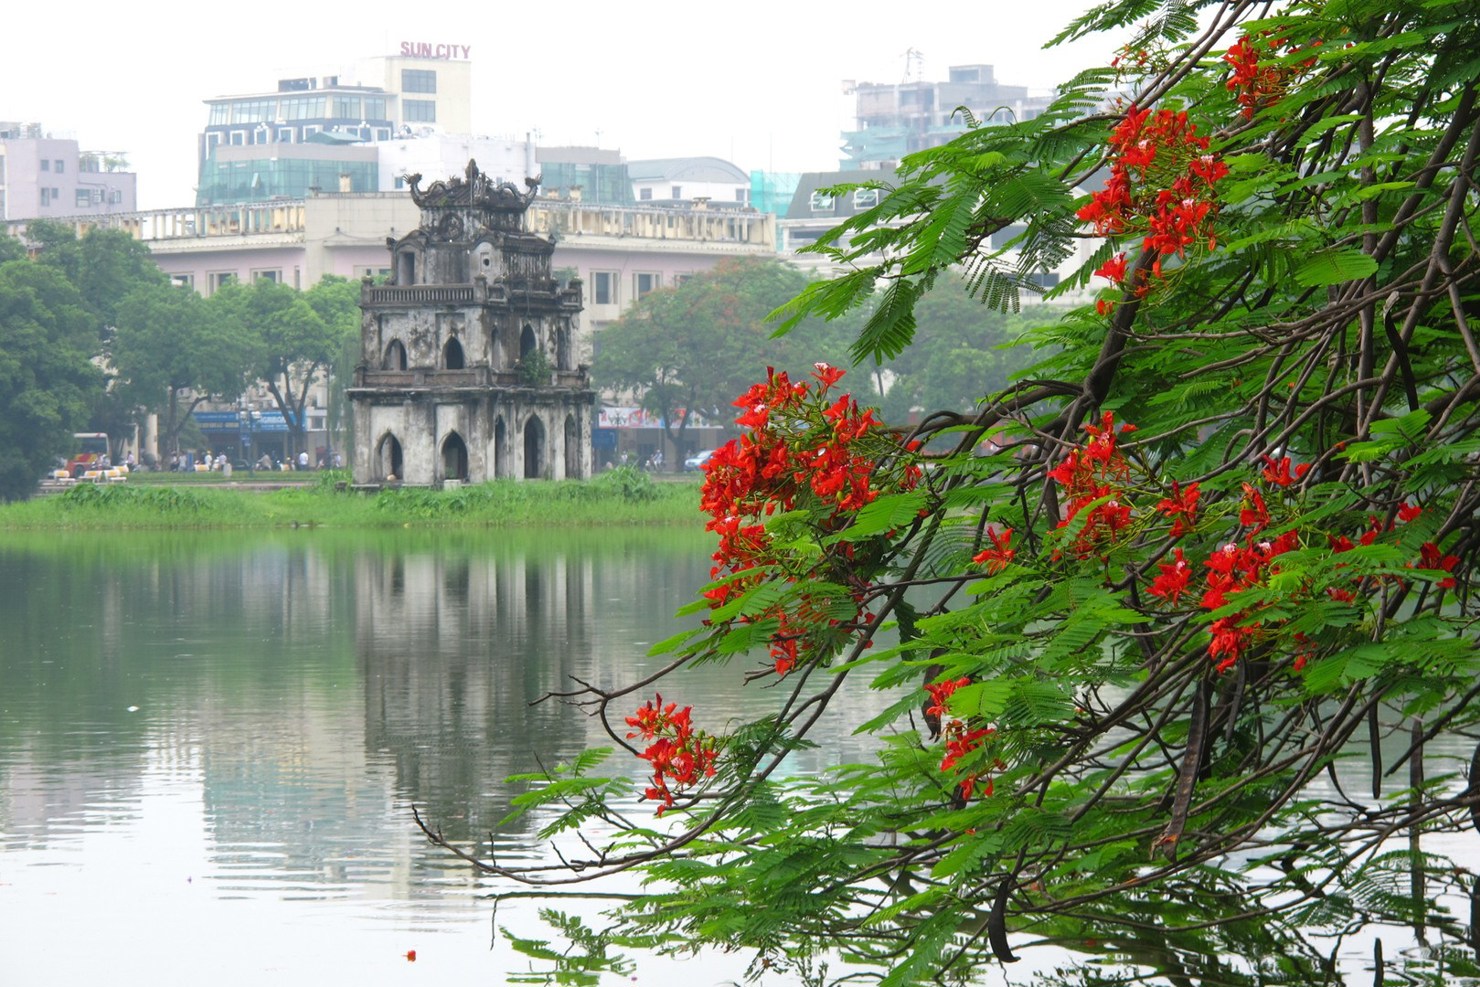 Hồ Hoàn Kiếm mang vẻ đẹp thơ mộng.